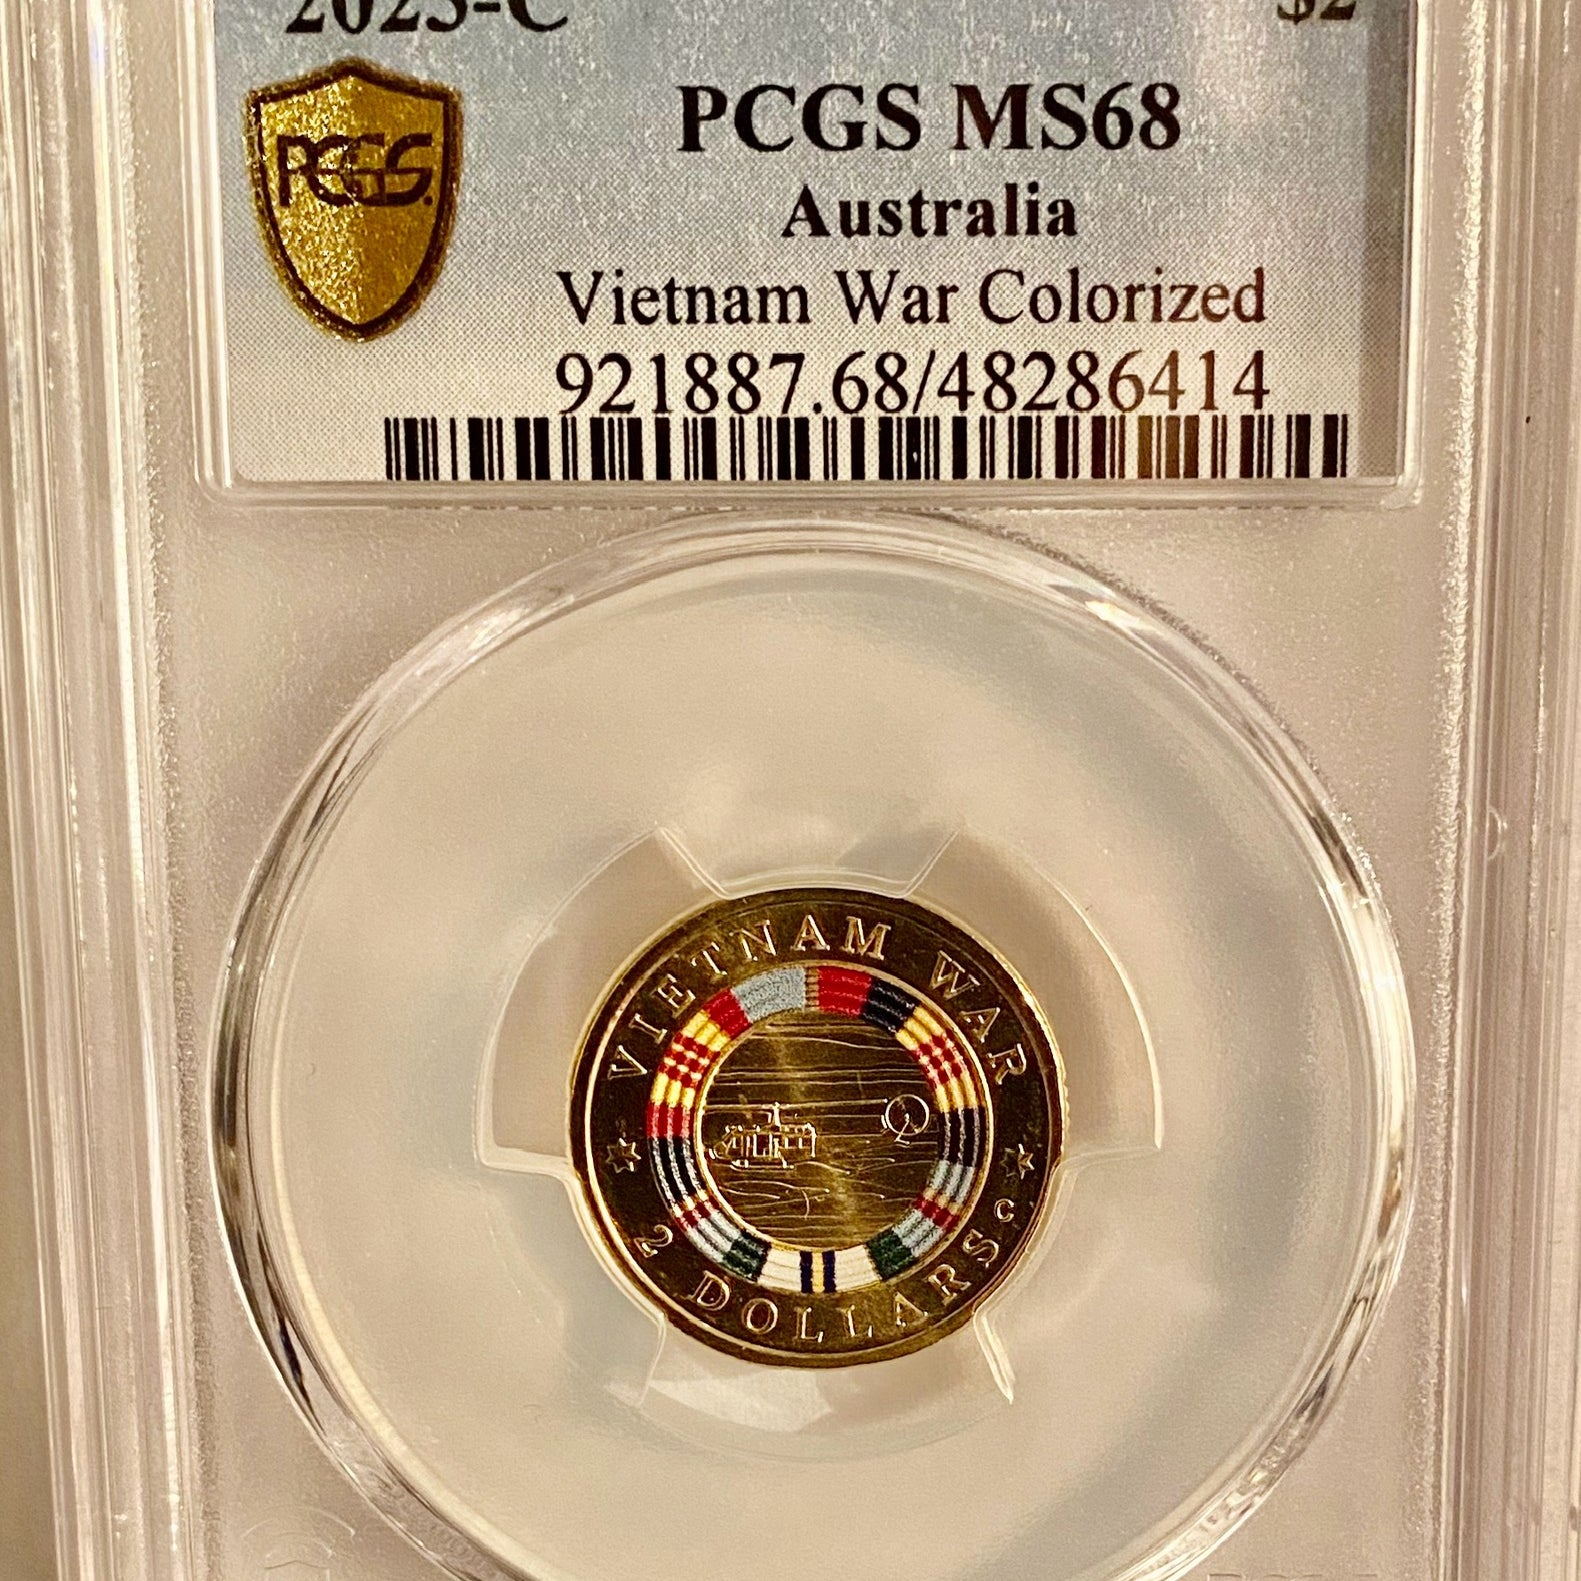 Royal Australian Mint 2023-C Vietnam War Colourized PCGS MS68